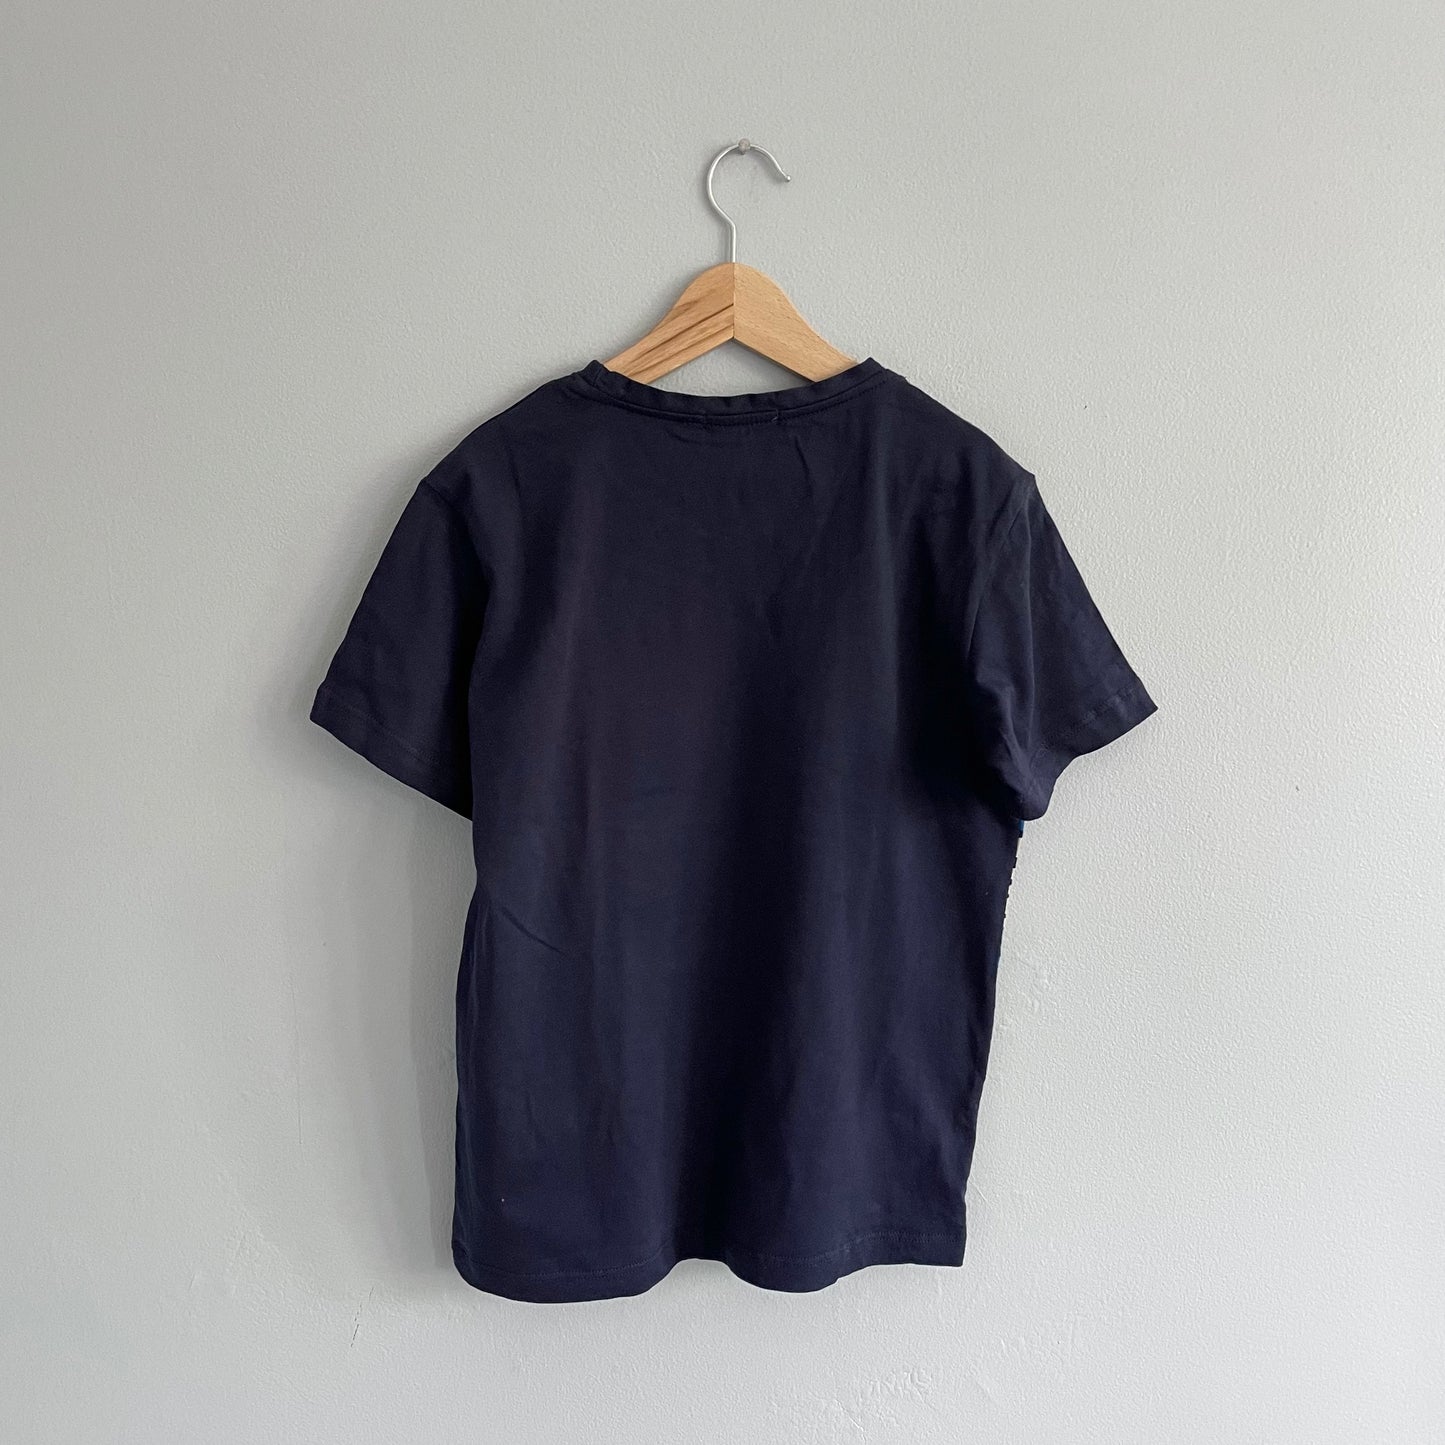 Byblos / Navy t-shirt / 10Y